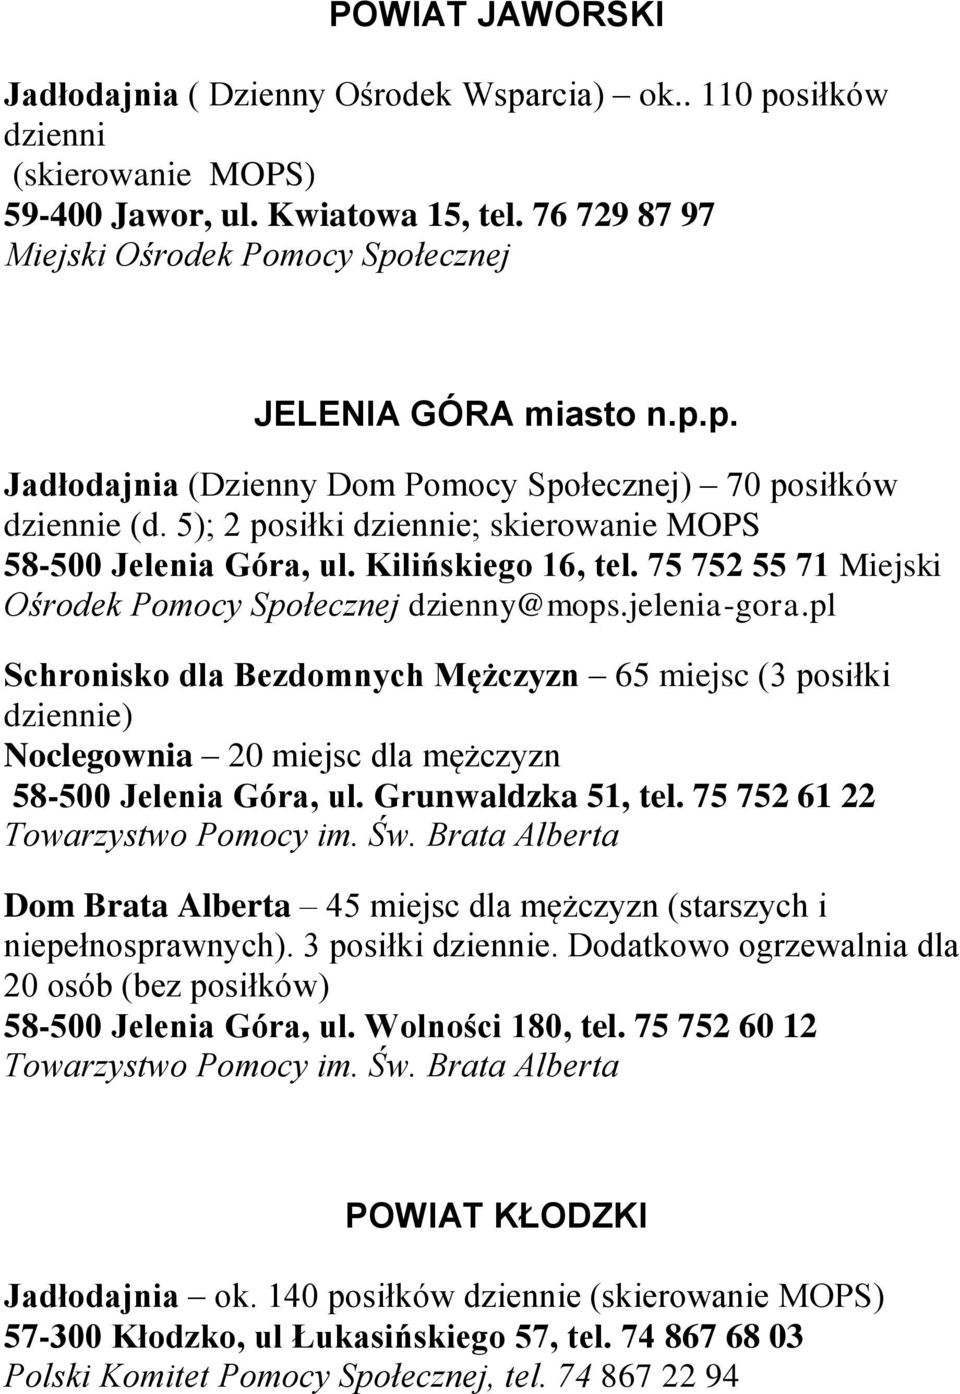 Kilińskiego 16, tel. 75 752 55 71 Miejski Ośrodek Pomocy Społecznej dzienny@mops.jelenia-gora.